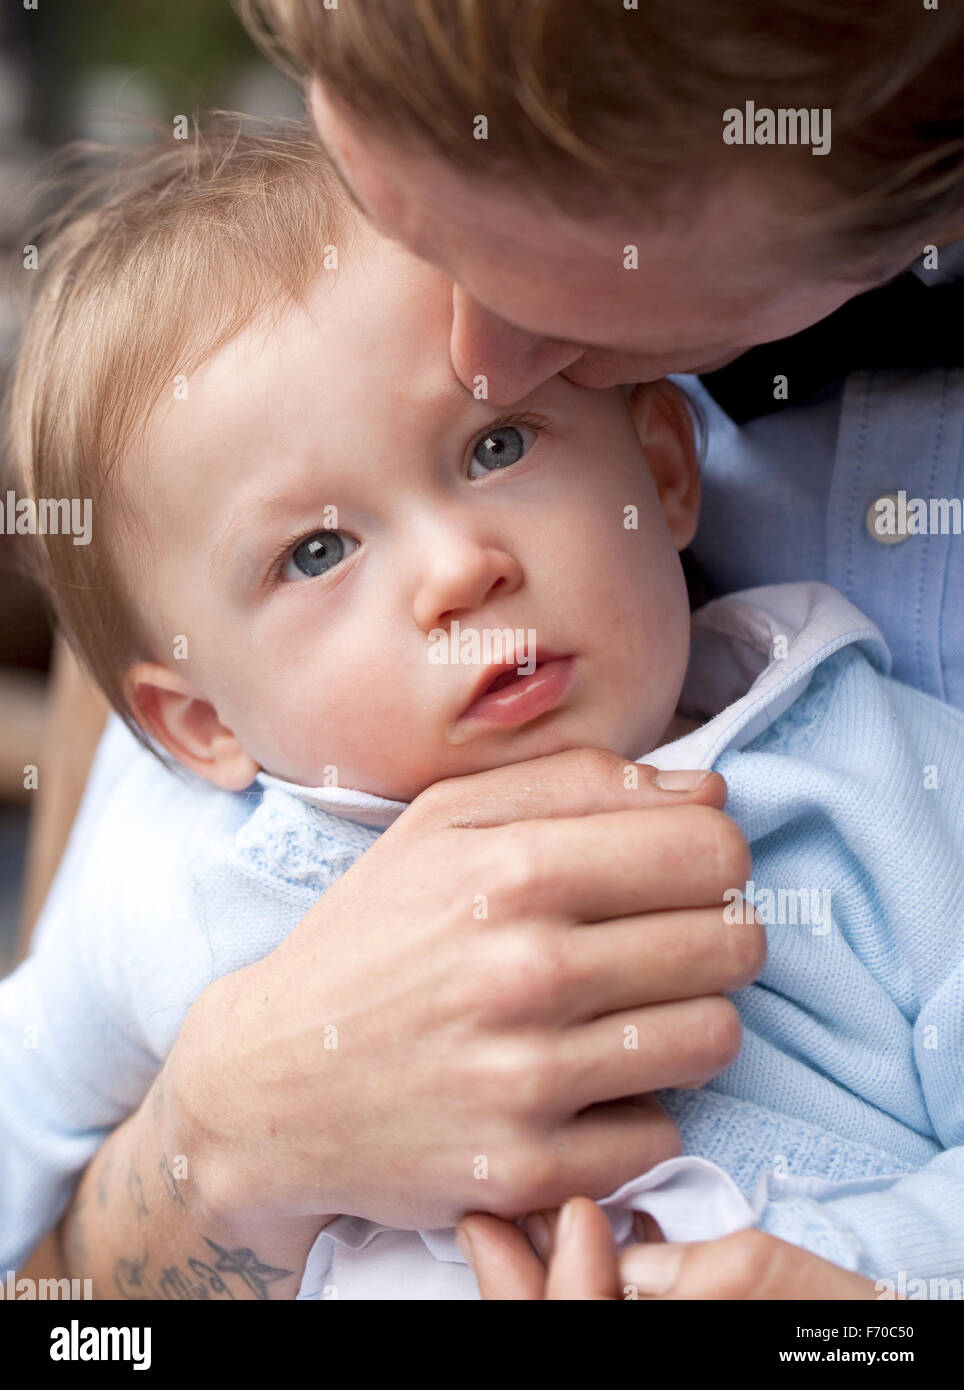 Sanften Kuss. Ein junges Baby-junge wird sanft von seinem Vater geküsst wird. Sein Vater hält das Kind zärtlich. Stockfoto